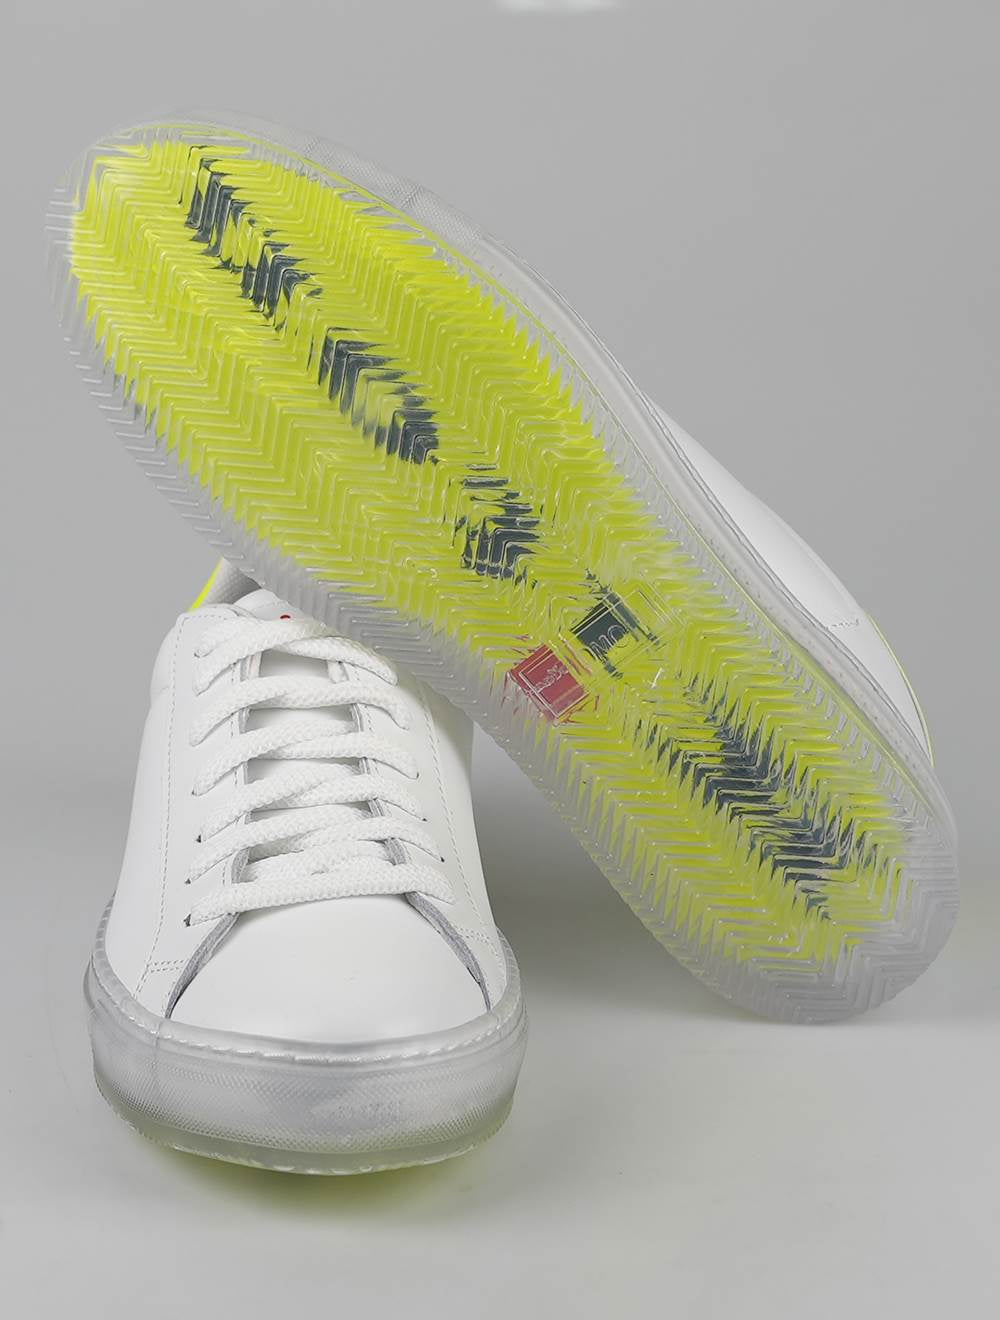 Քետon White Yellow Leather Sneakers Special հրատարակում